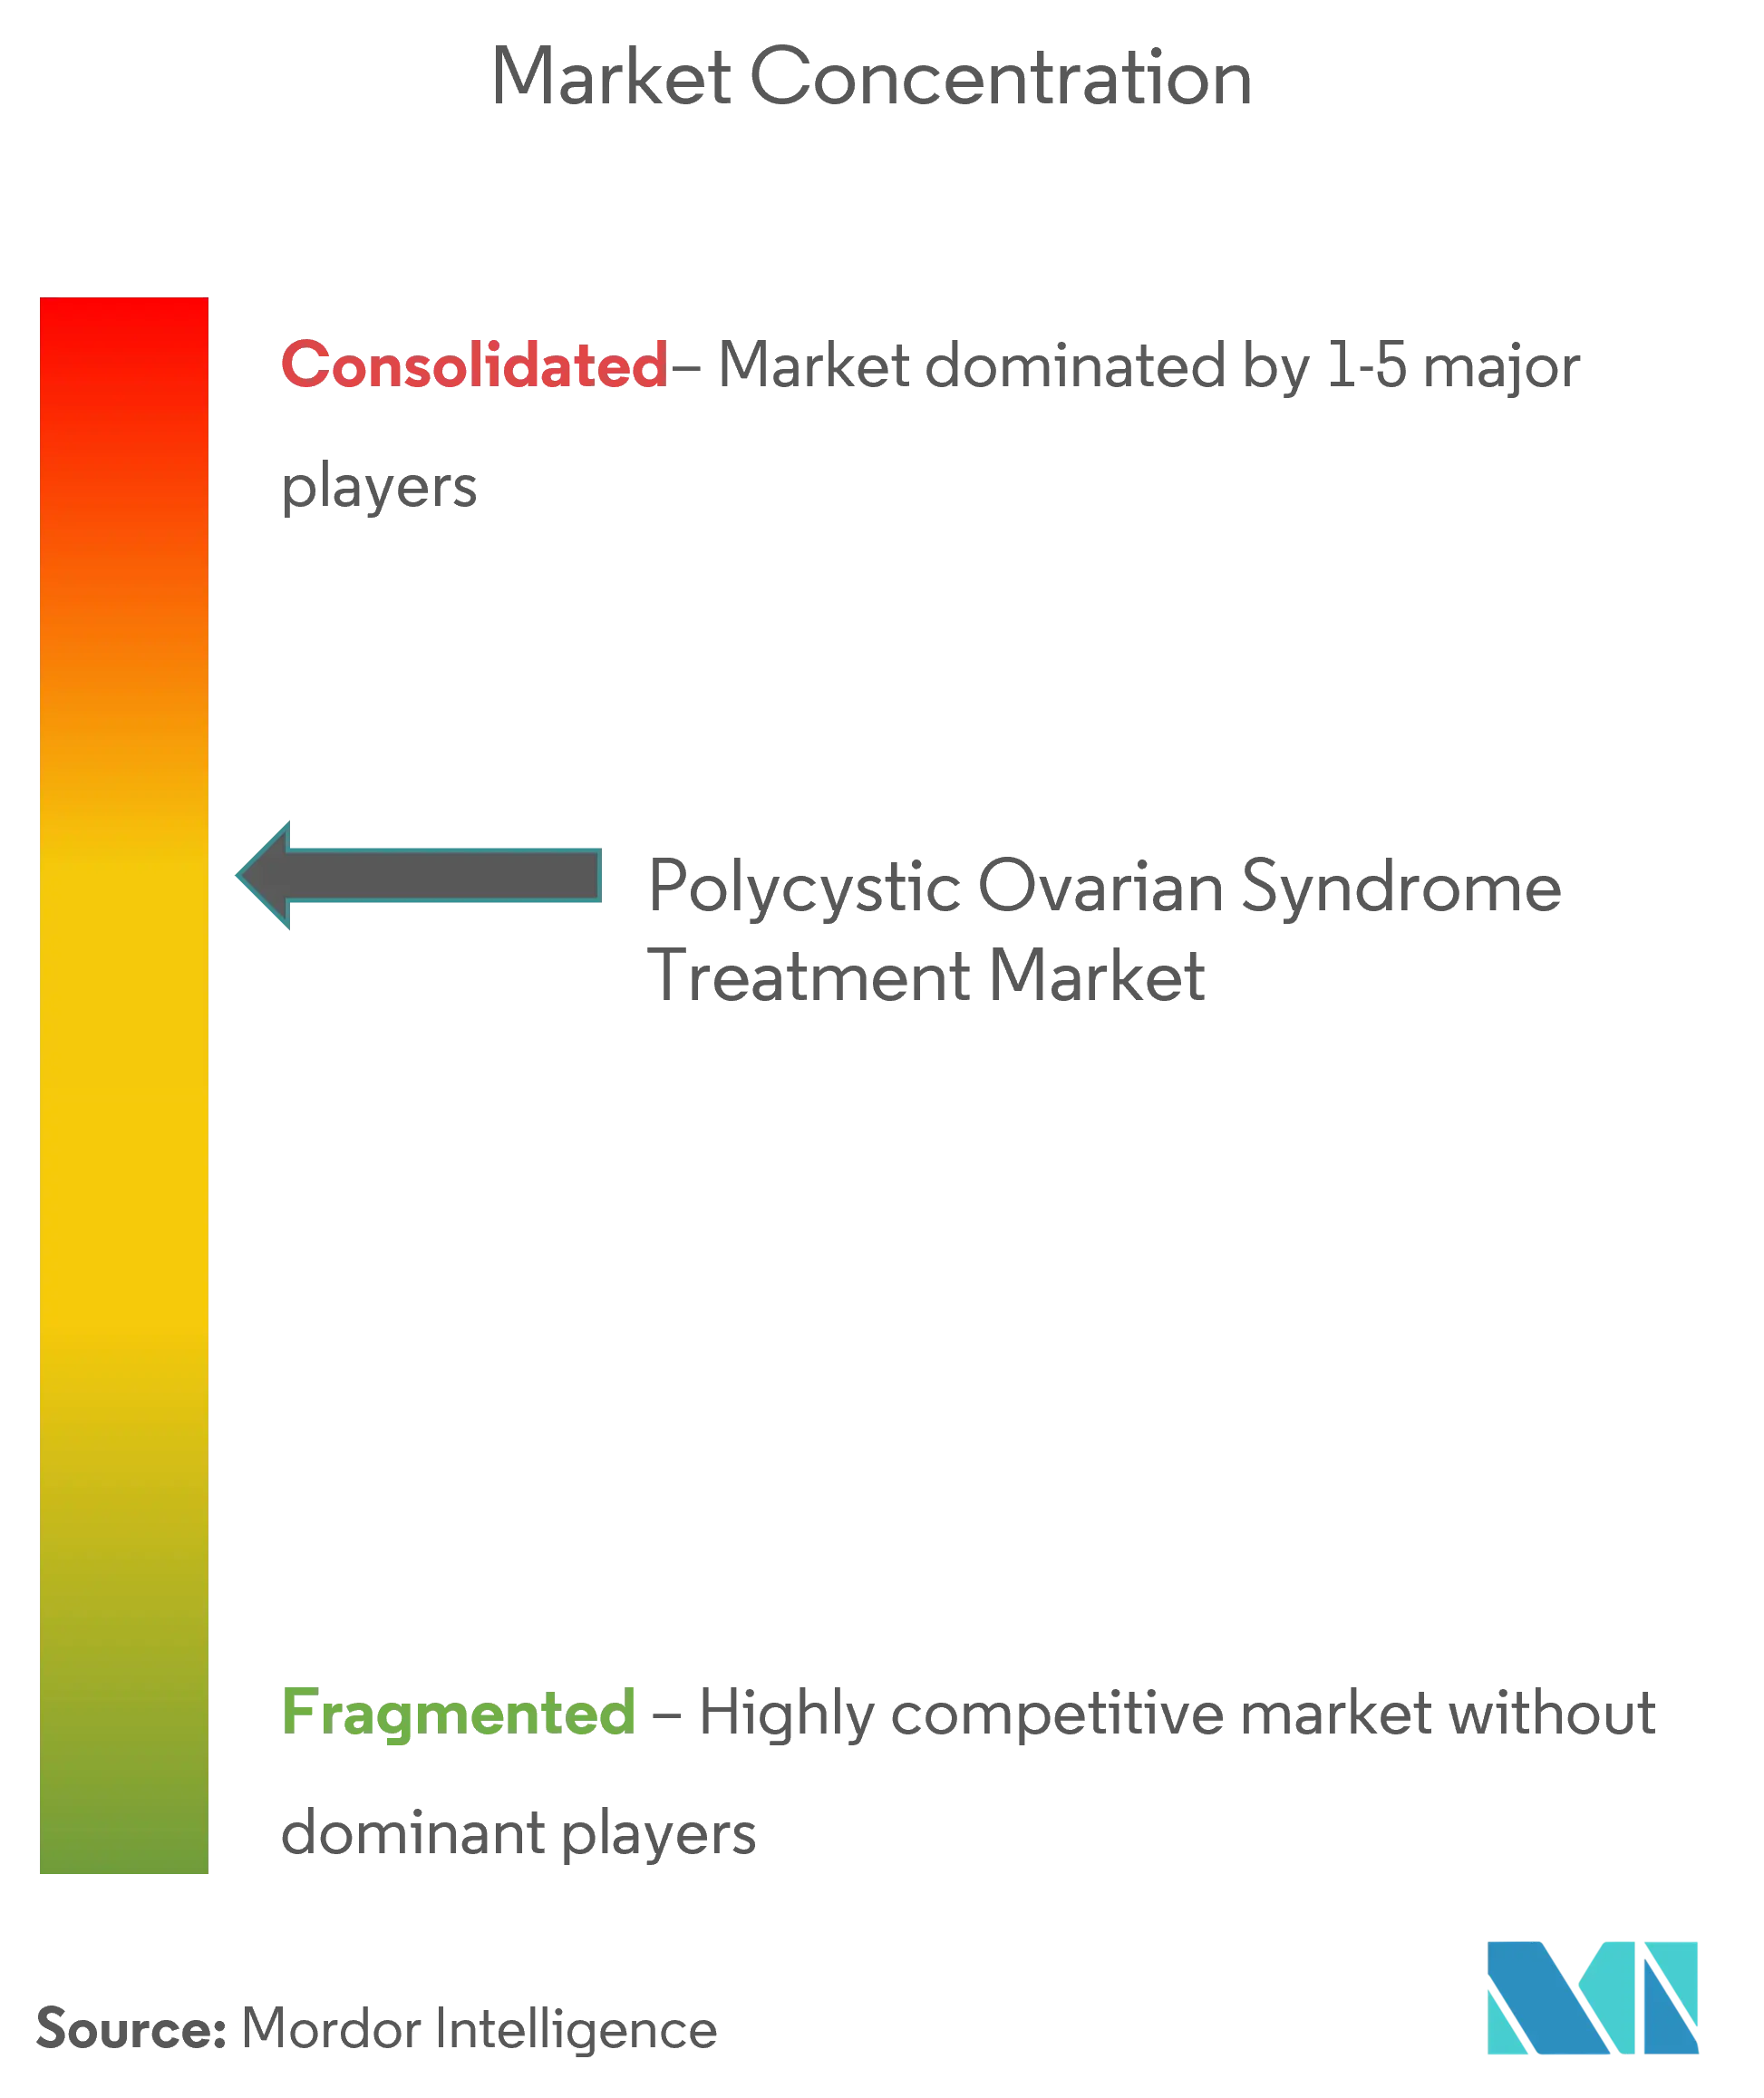 Concentración del mercado de tratamiento del síndrome de ovario poliquístico